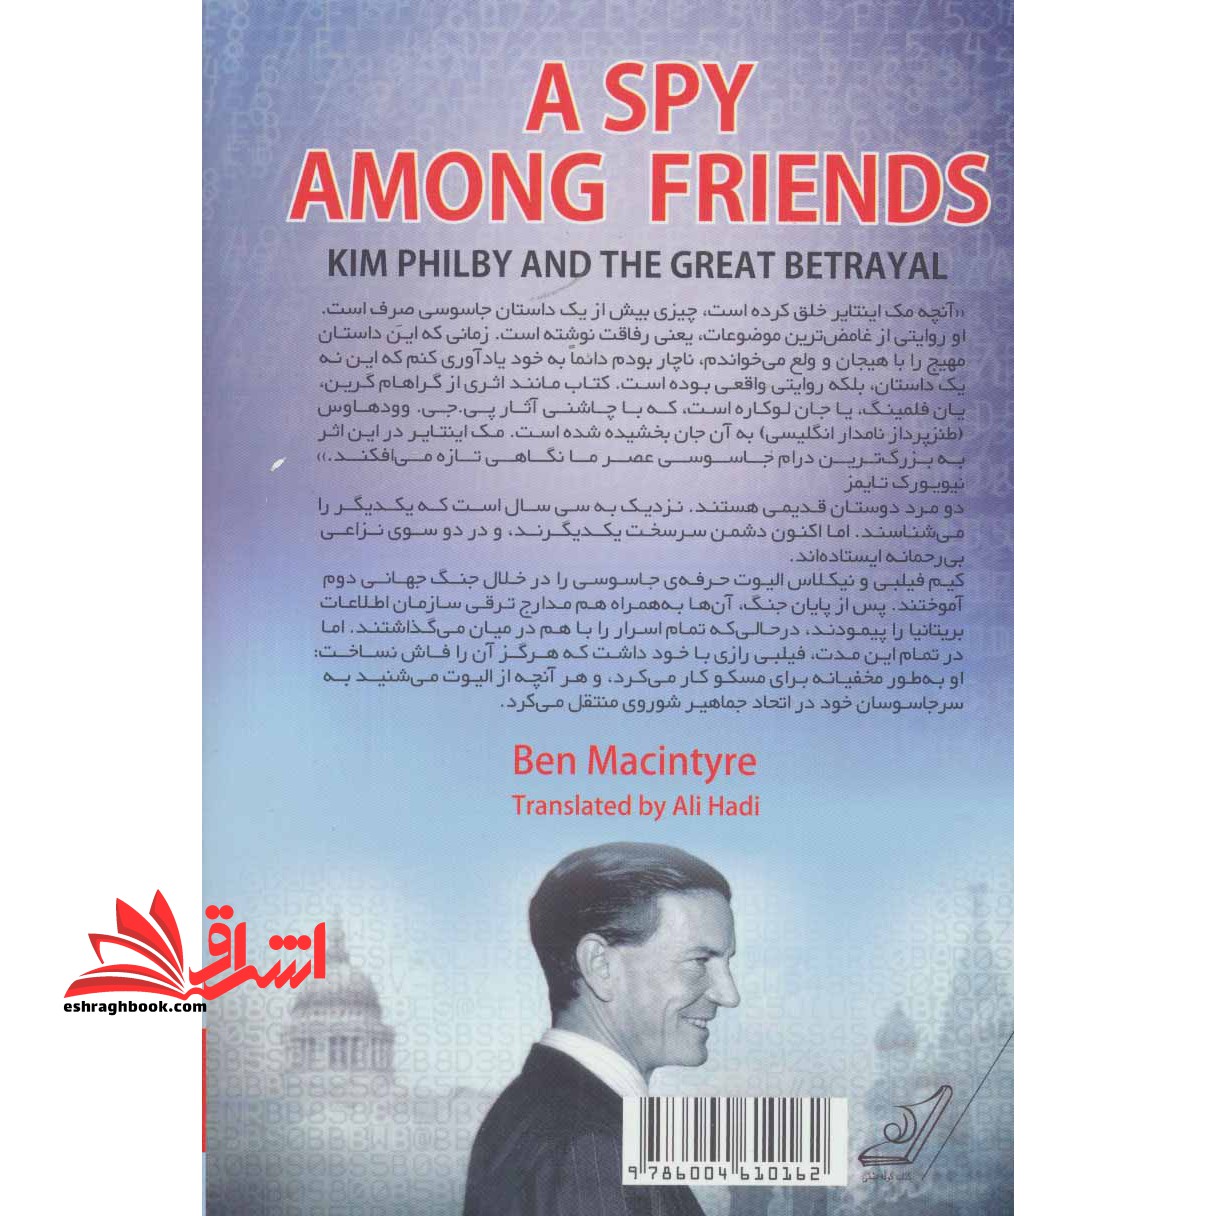 کتاب یک جاسوس در میان دوستان - کیم فیلبی و خیانت بزرگ